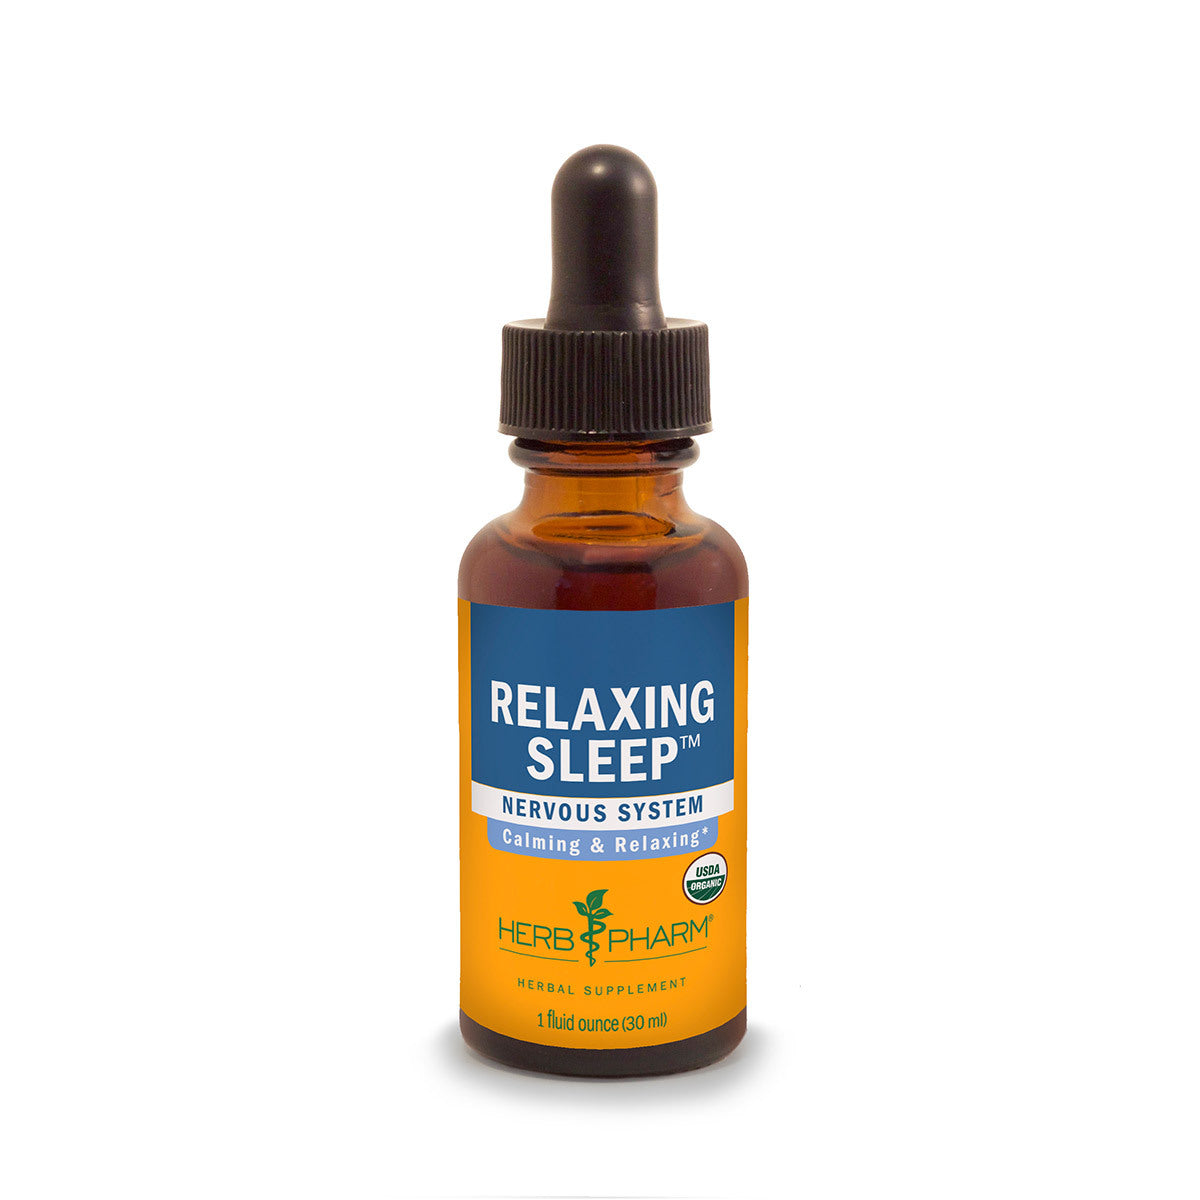 Primary image of Relaxing Sleep Tonic